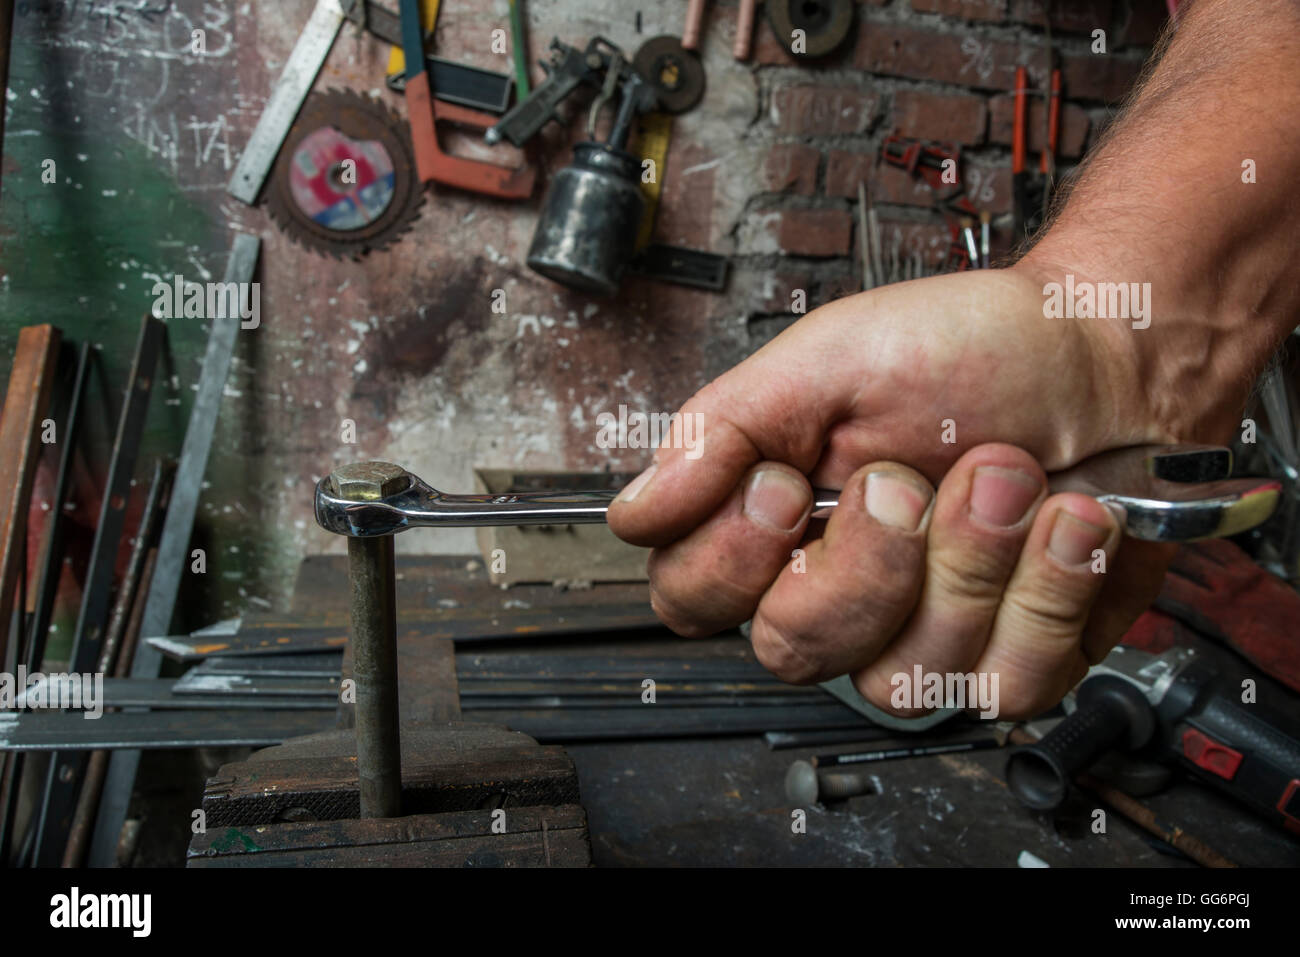 Arbeiter Hand festziehen oder lösen eine Mutter eine rostige Schraube mit  einem Schraubenschlüssel in der alten Werkstatt Stockfotografie - Alamy